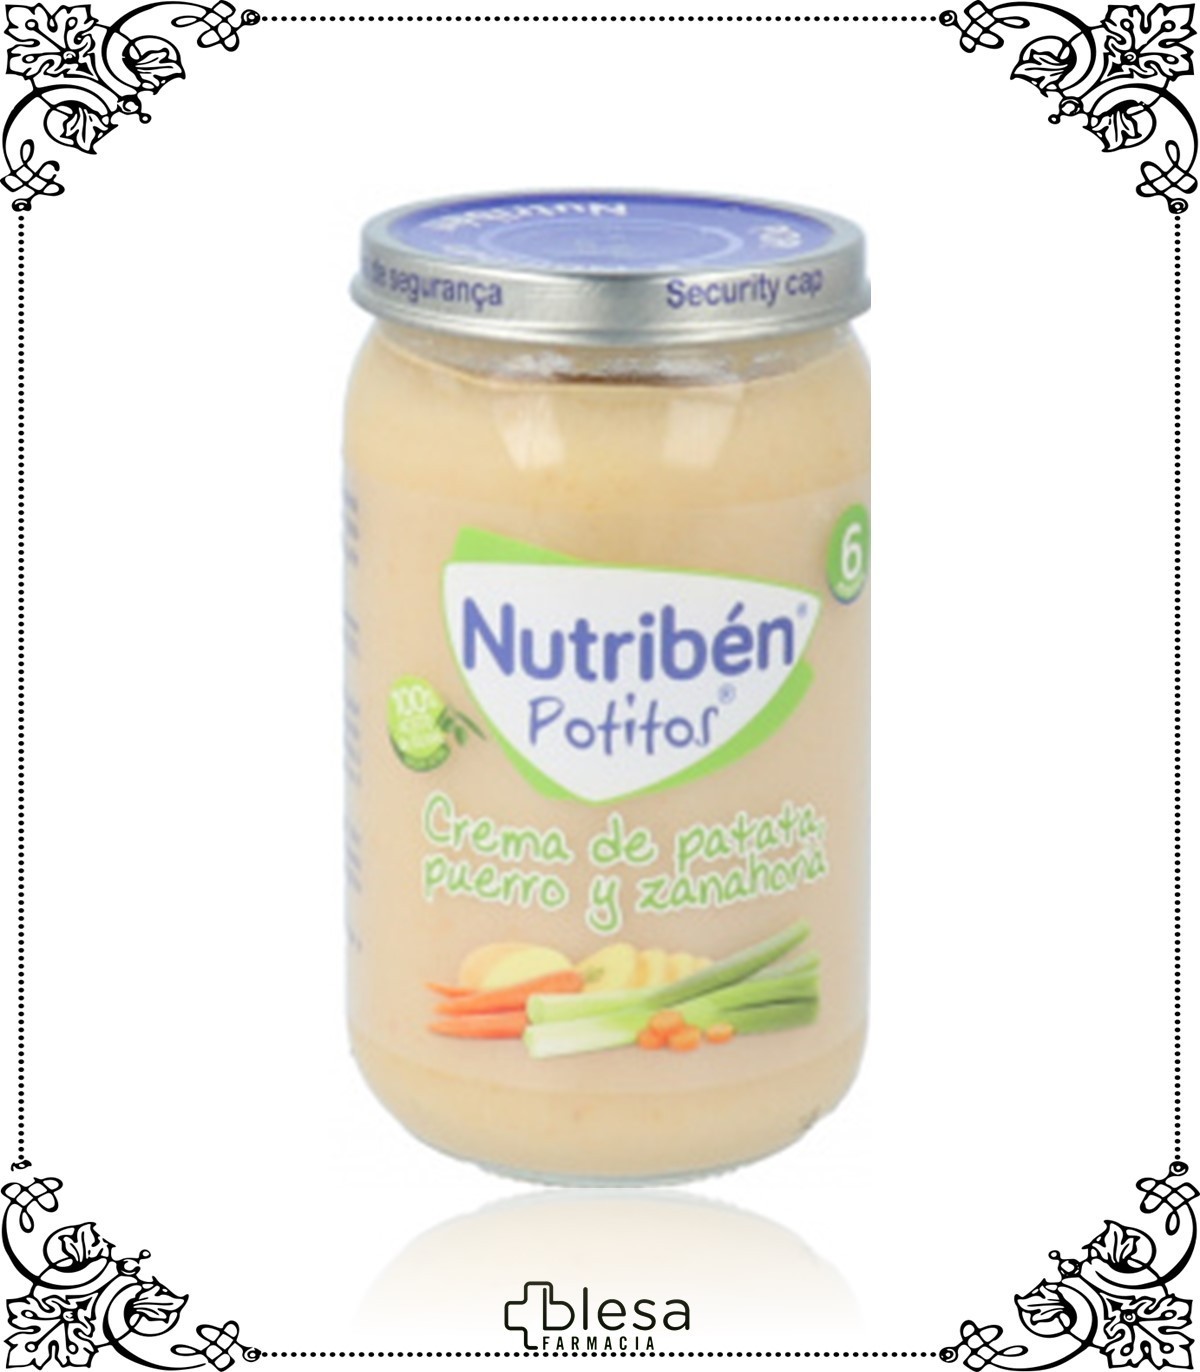 Nutribén Potitos Crema de Patata Puerro y Zanahoria 235g